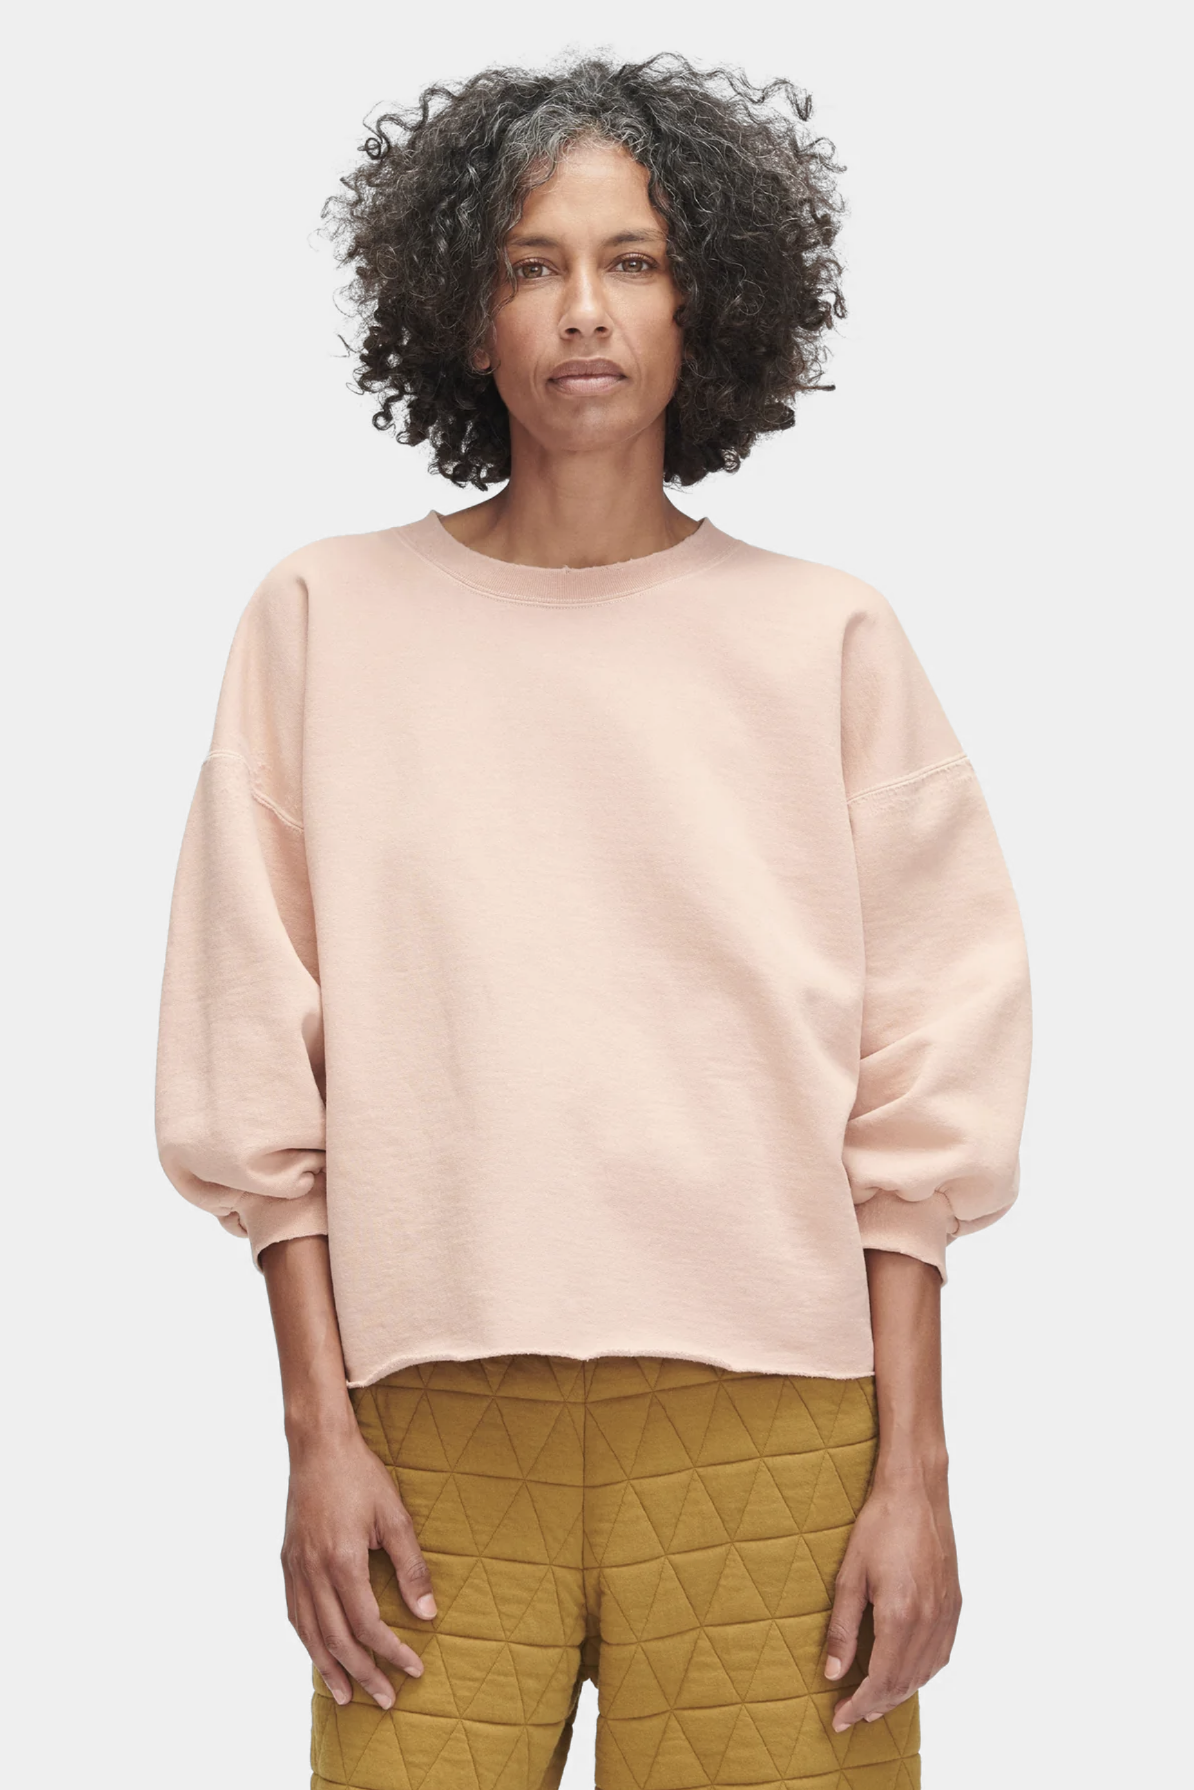 Fond Sweatshirt in Fawn by Rachel Comey